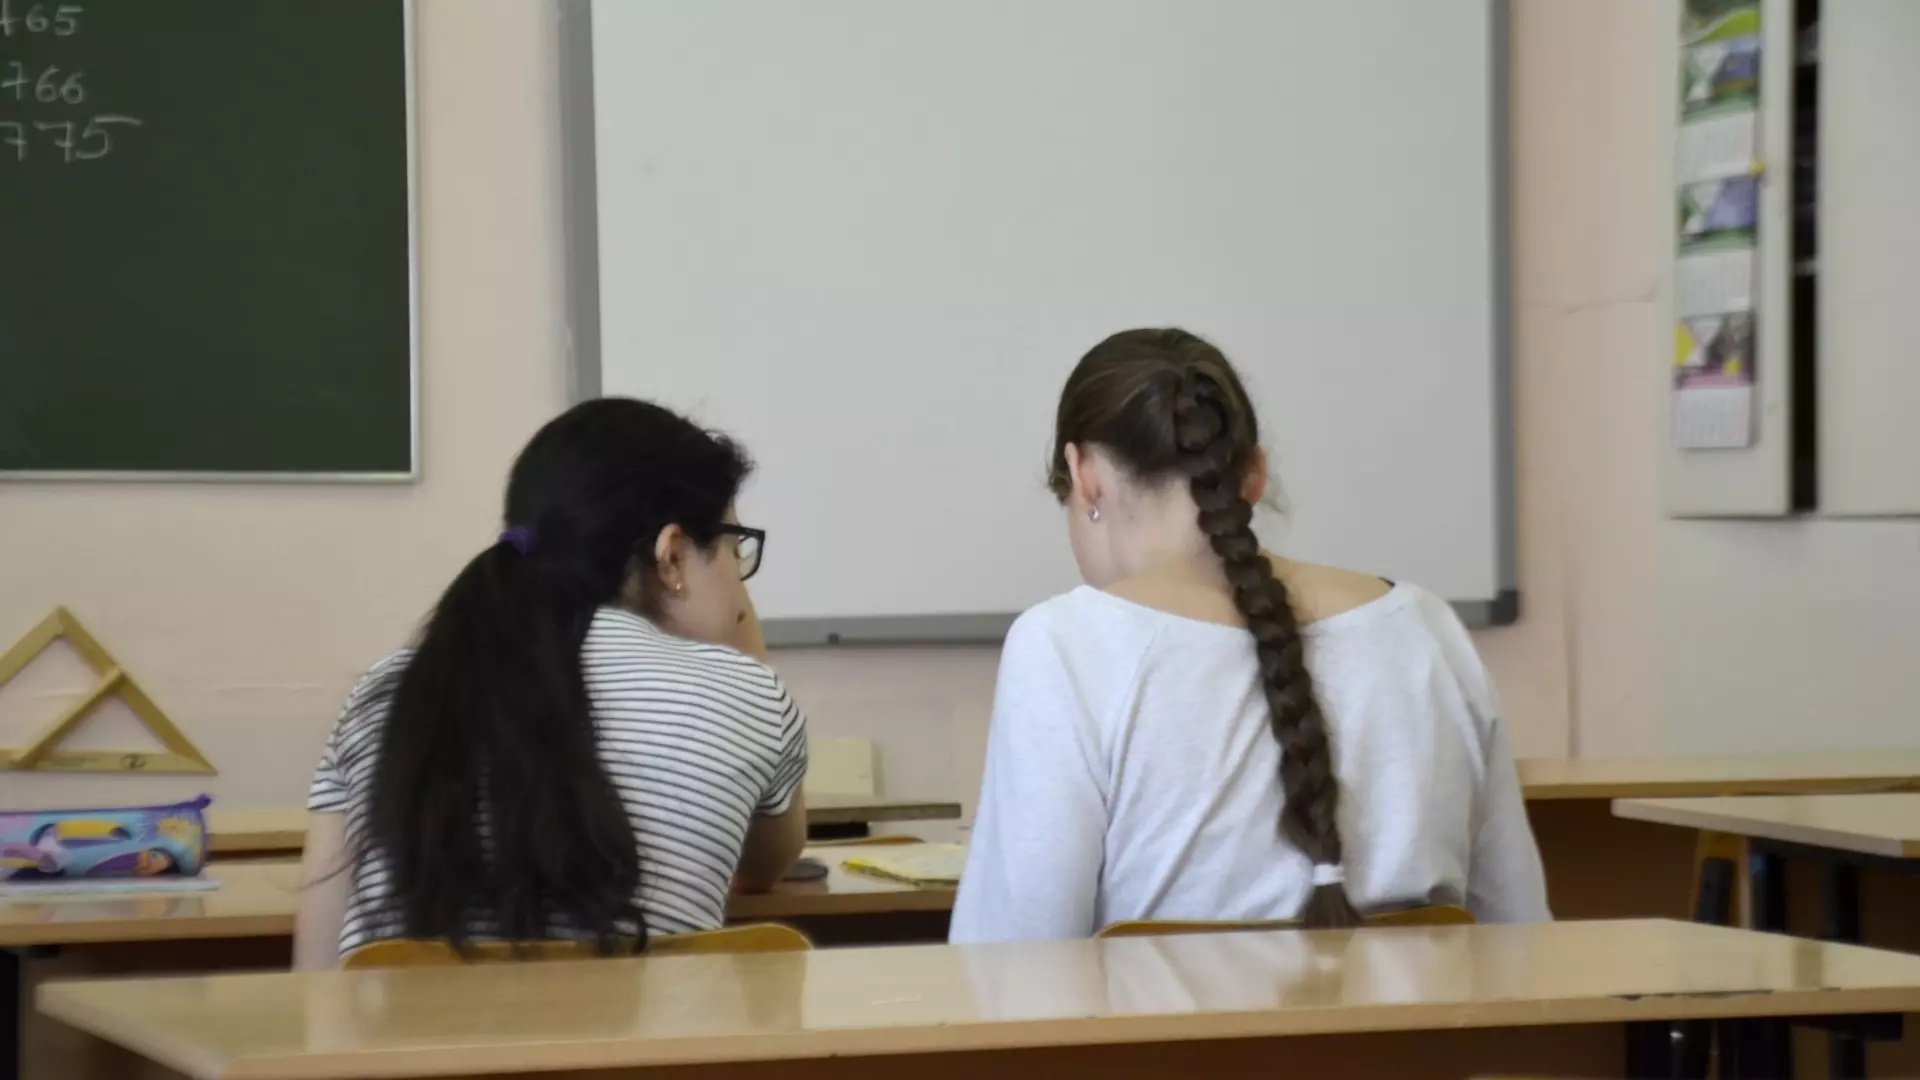 Учителя русского языка в Дагестане поймали за интимной перепиской со школьницей